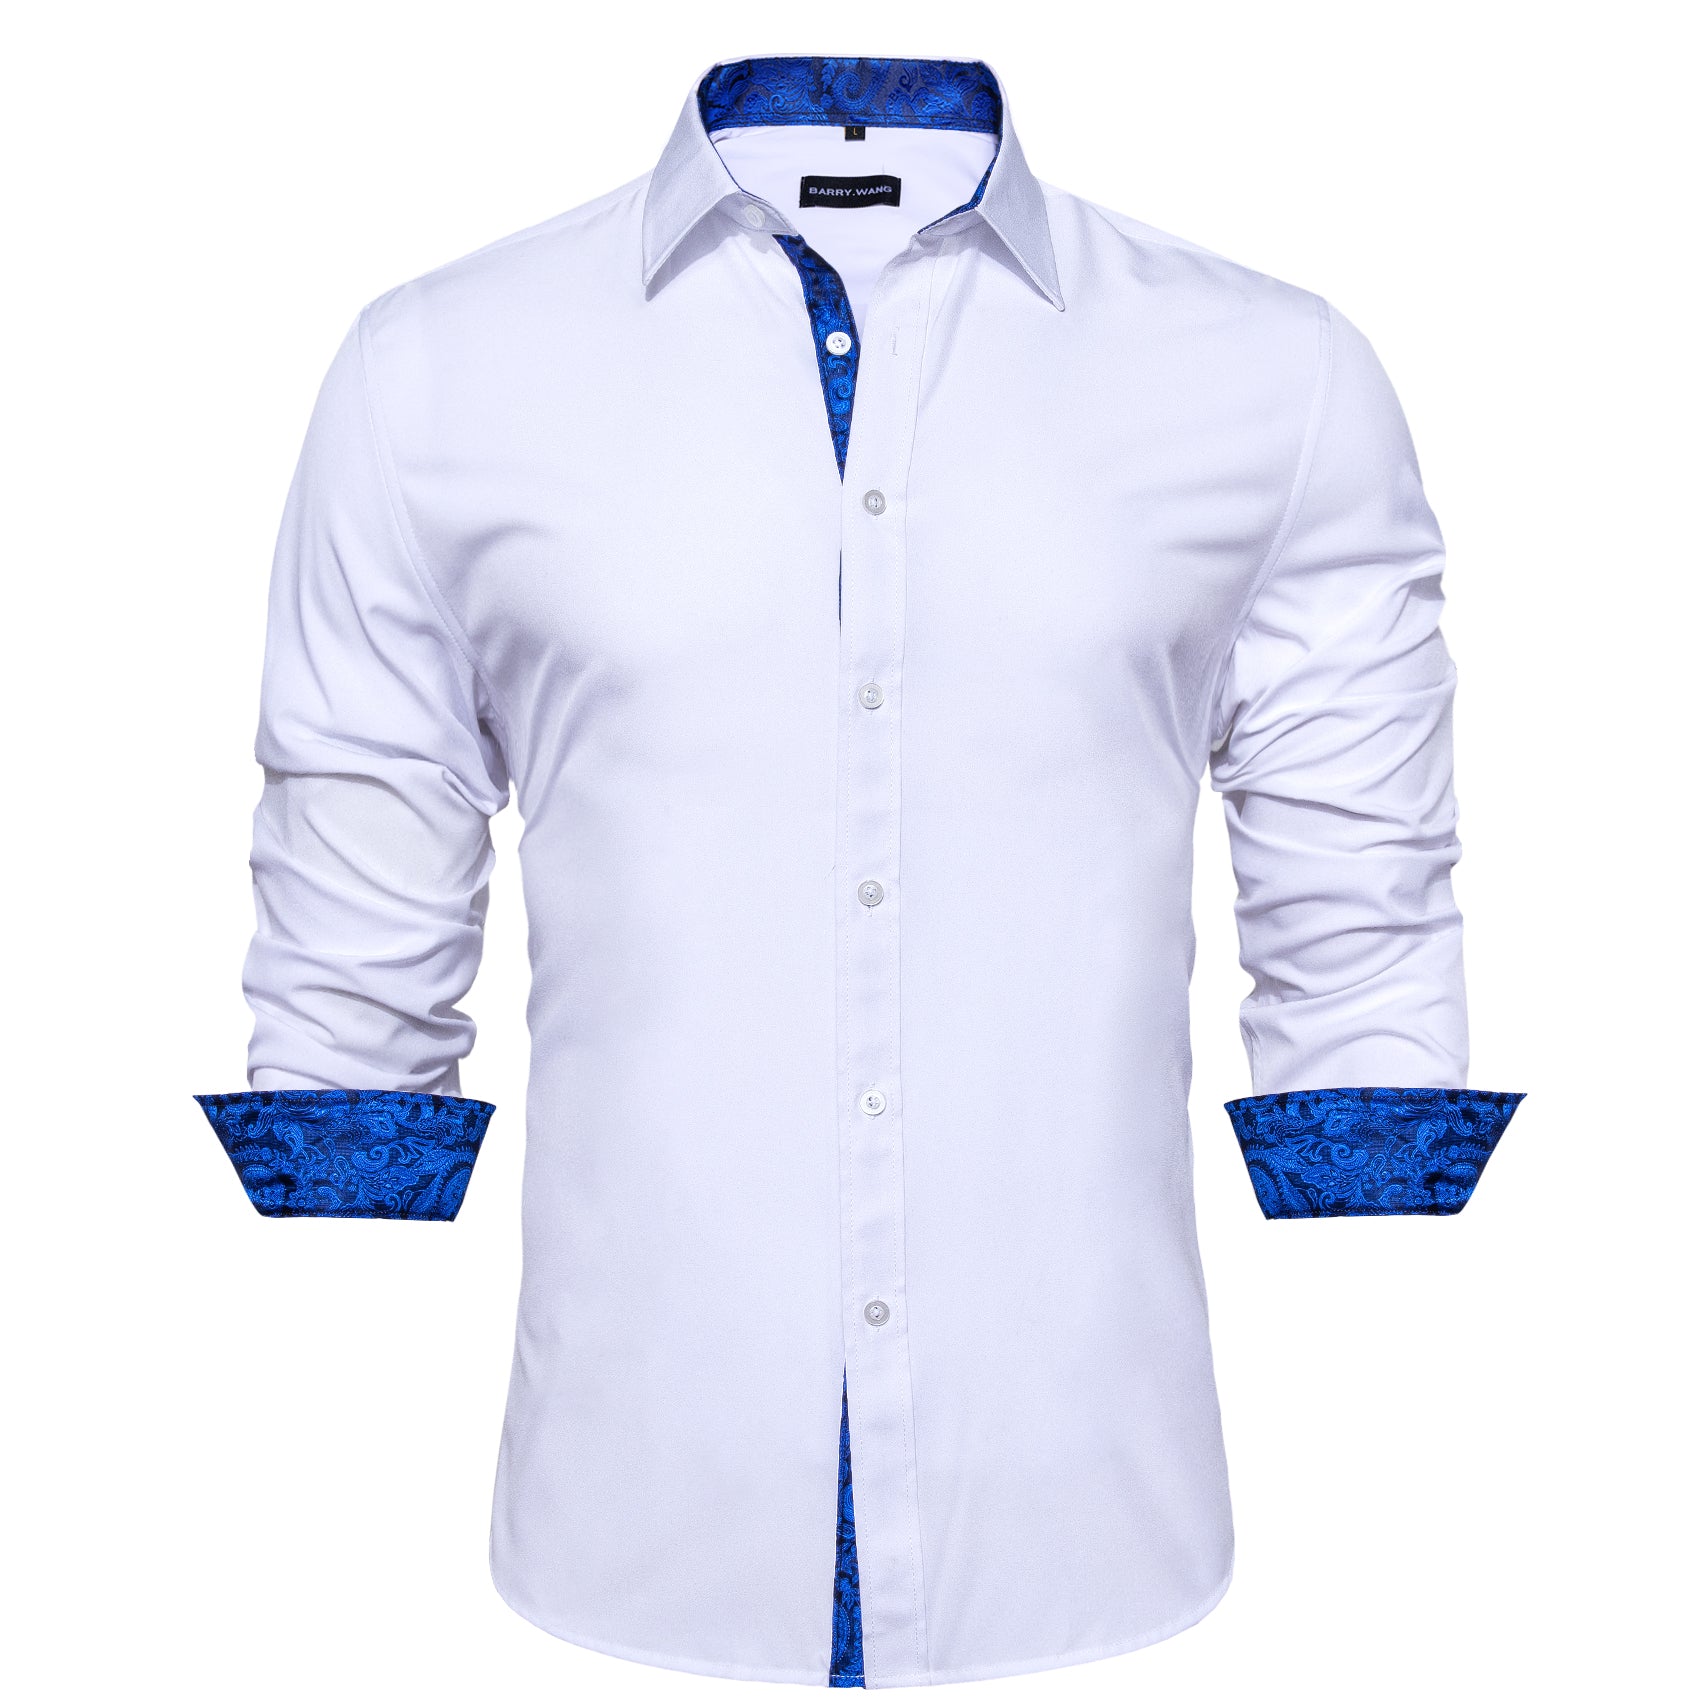 Barry.wang Button Down Shirt White Blue Splicing Men's Shirt Formal